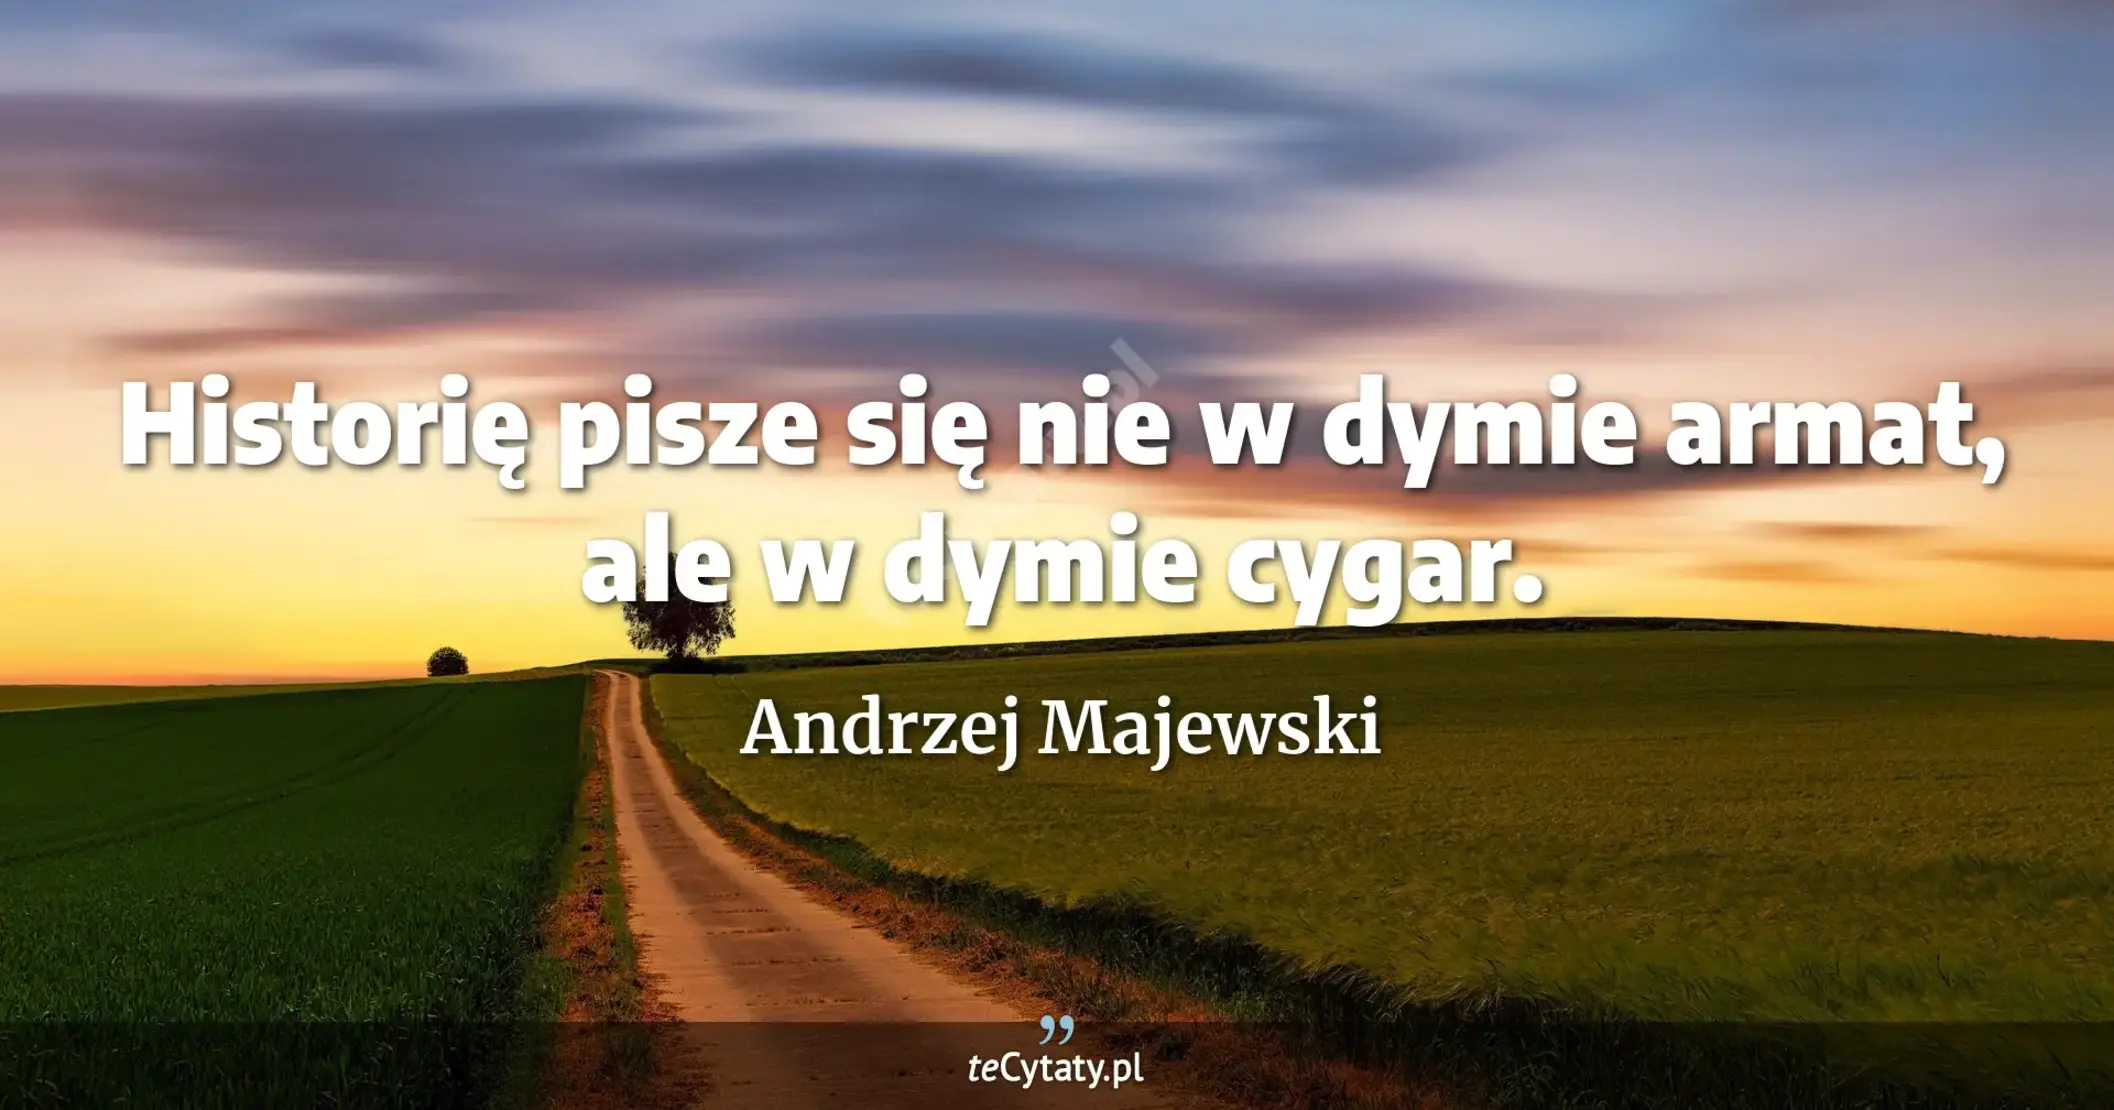 Historię pisze się nie w dymie armat, ale w dymie cygar. - Andrzej Majewski